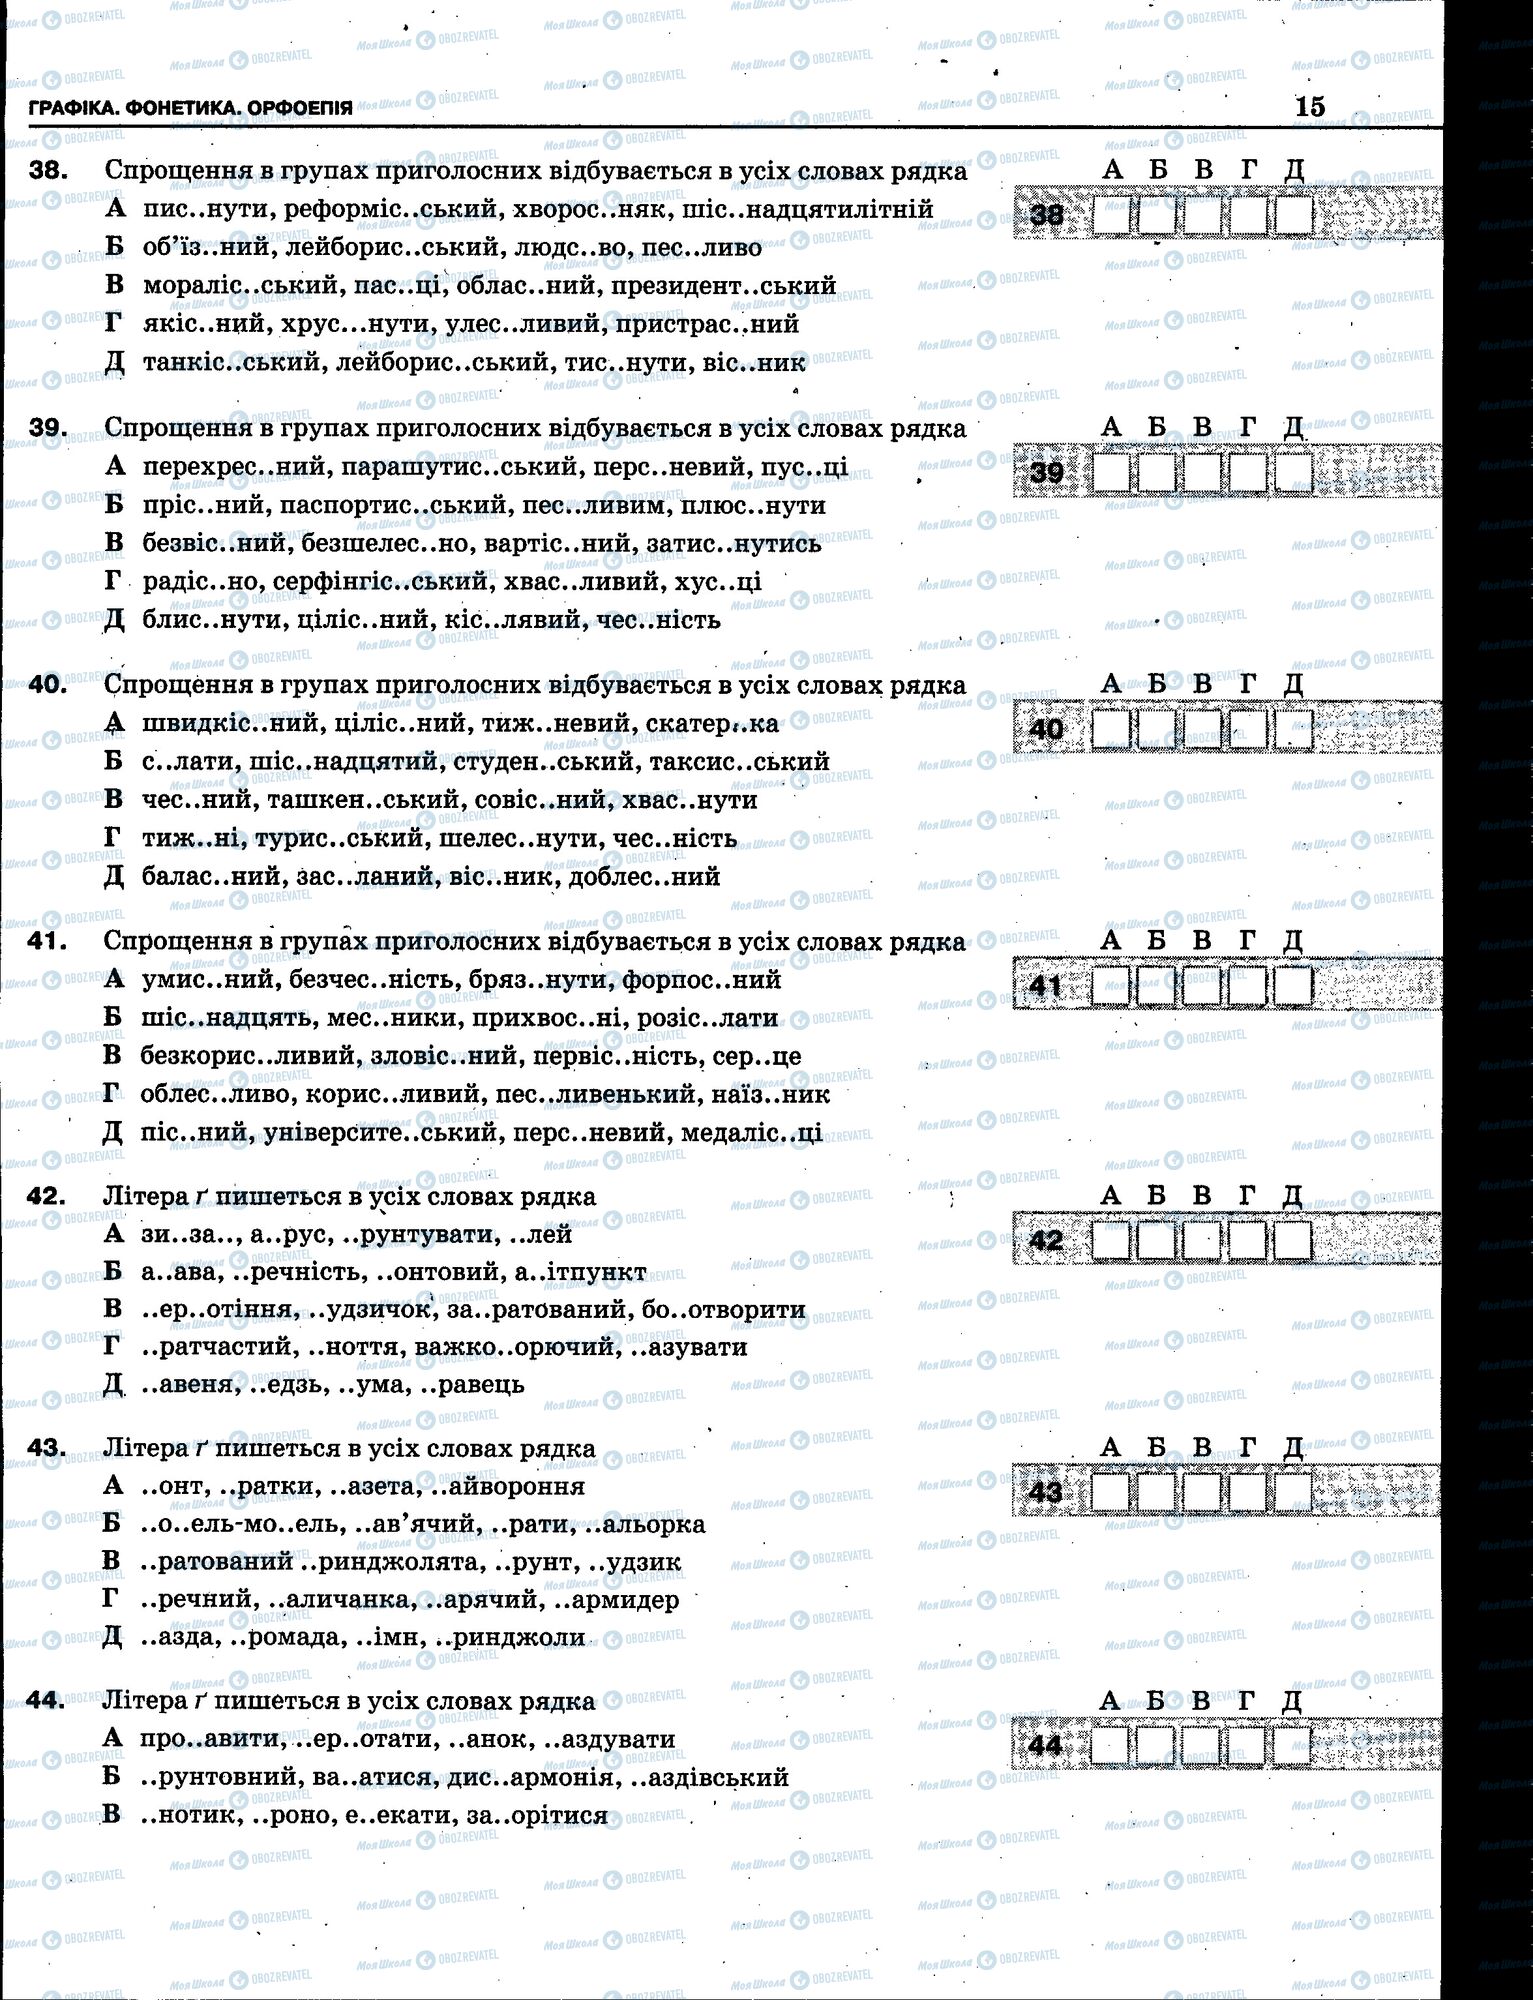 ЗНО Укр мова 11 класс страница 013